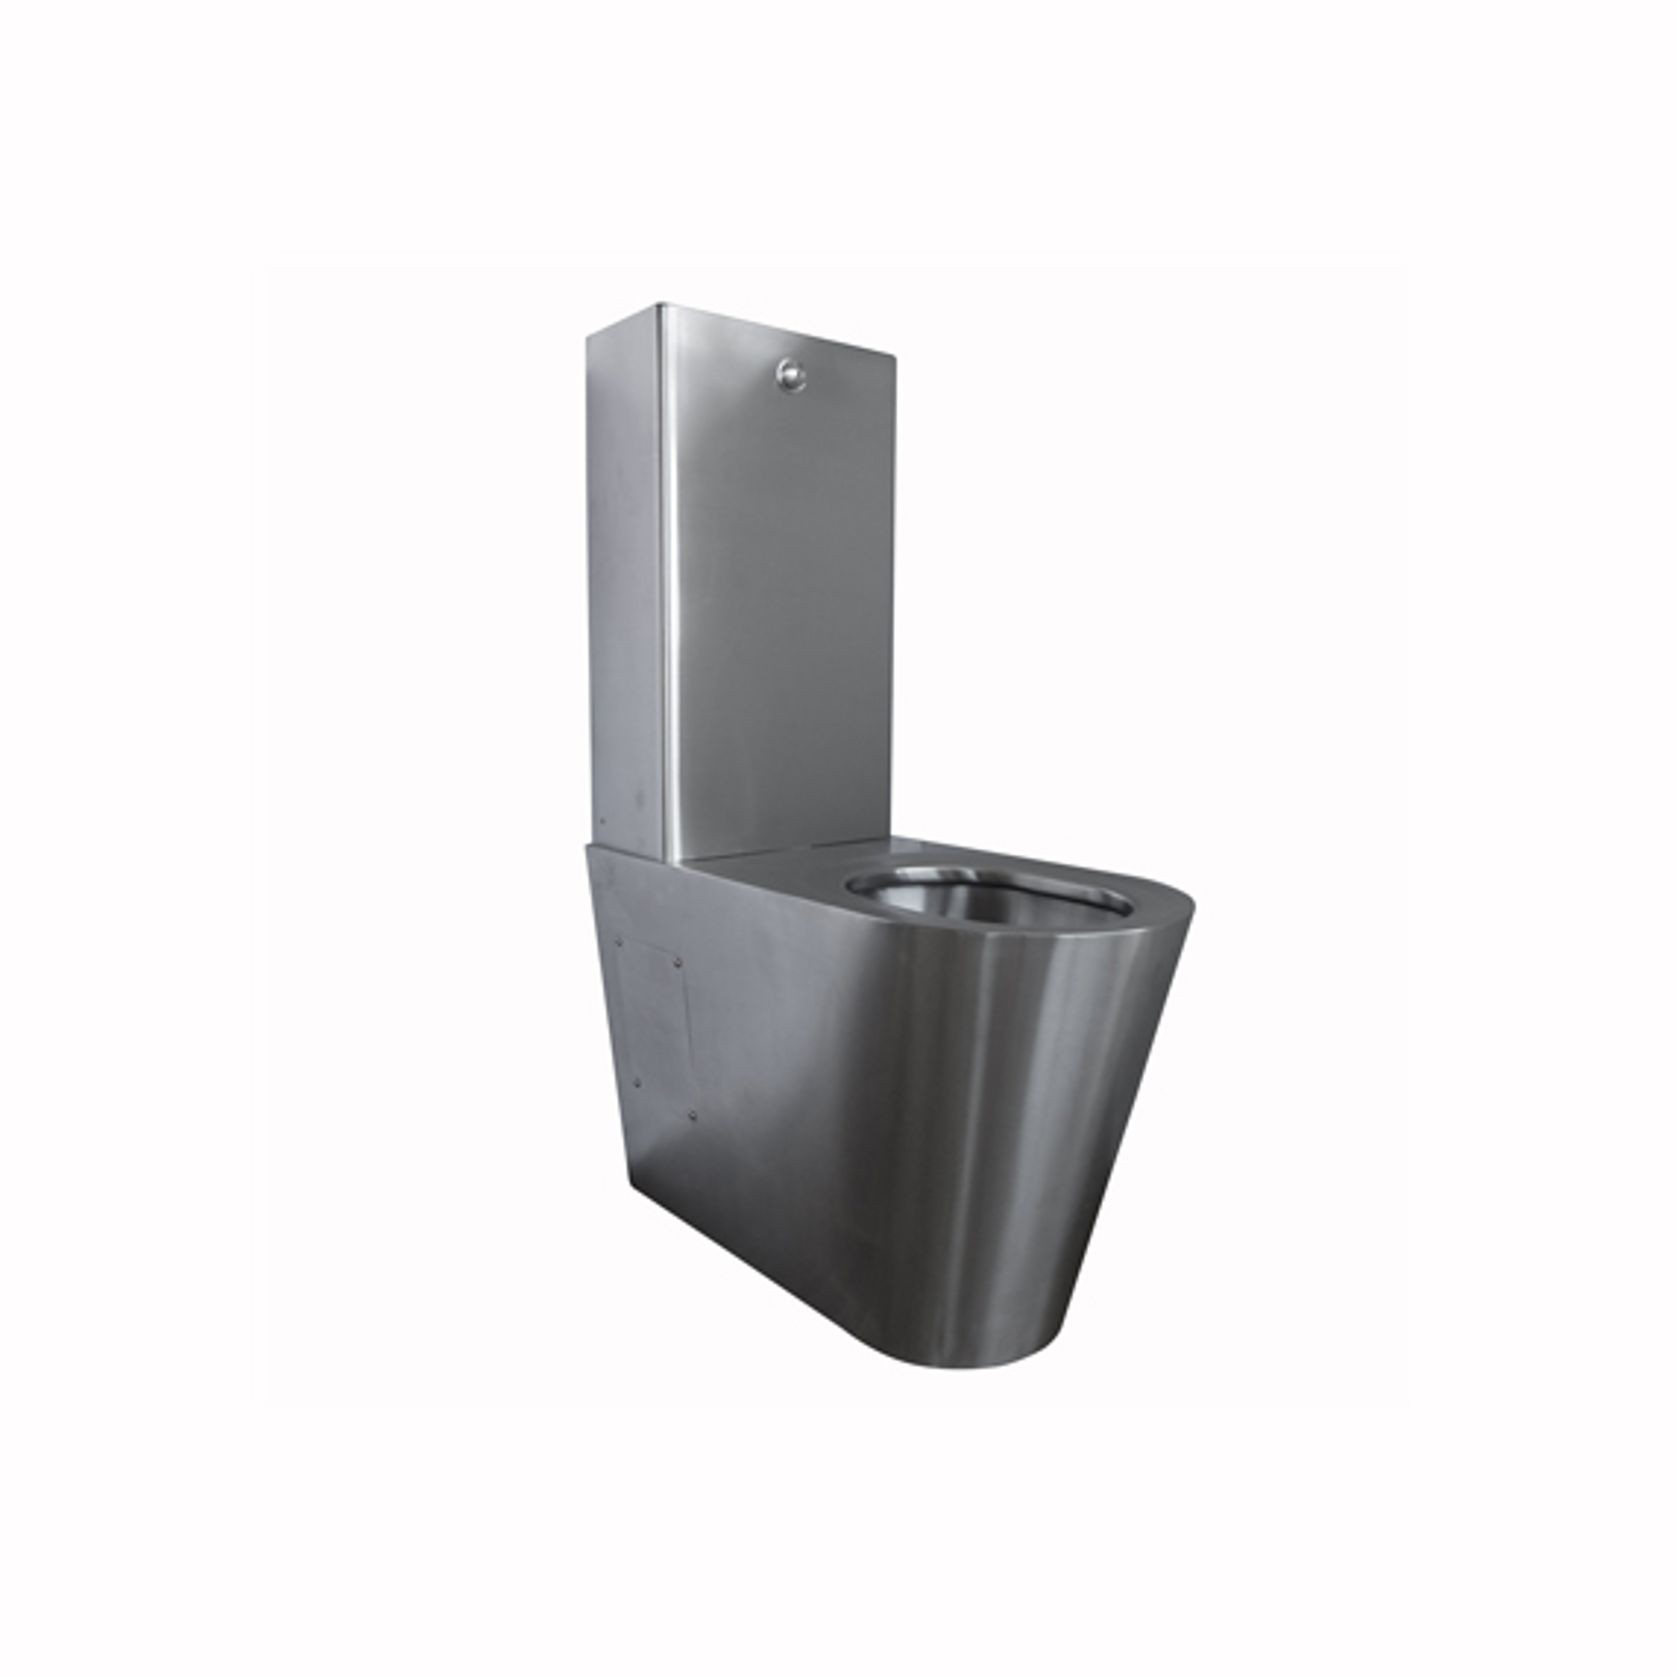 KWC Franke Stainless Steel Toilet Suite gallery detail image